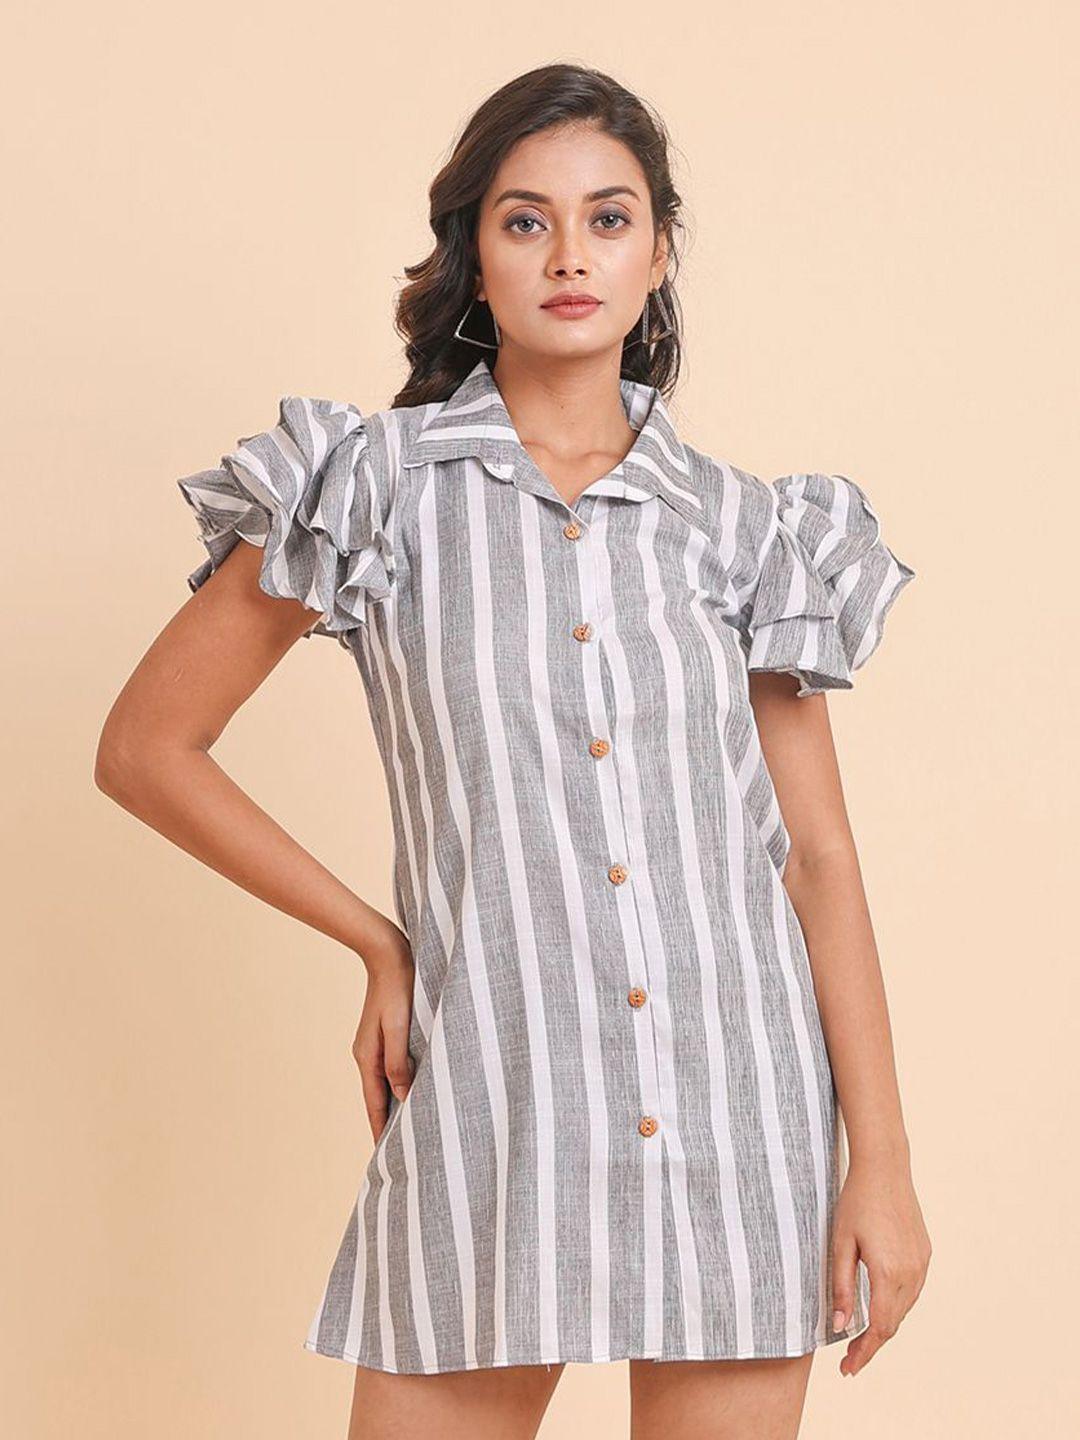 disli grey striped flutter sleeve shirt dress